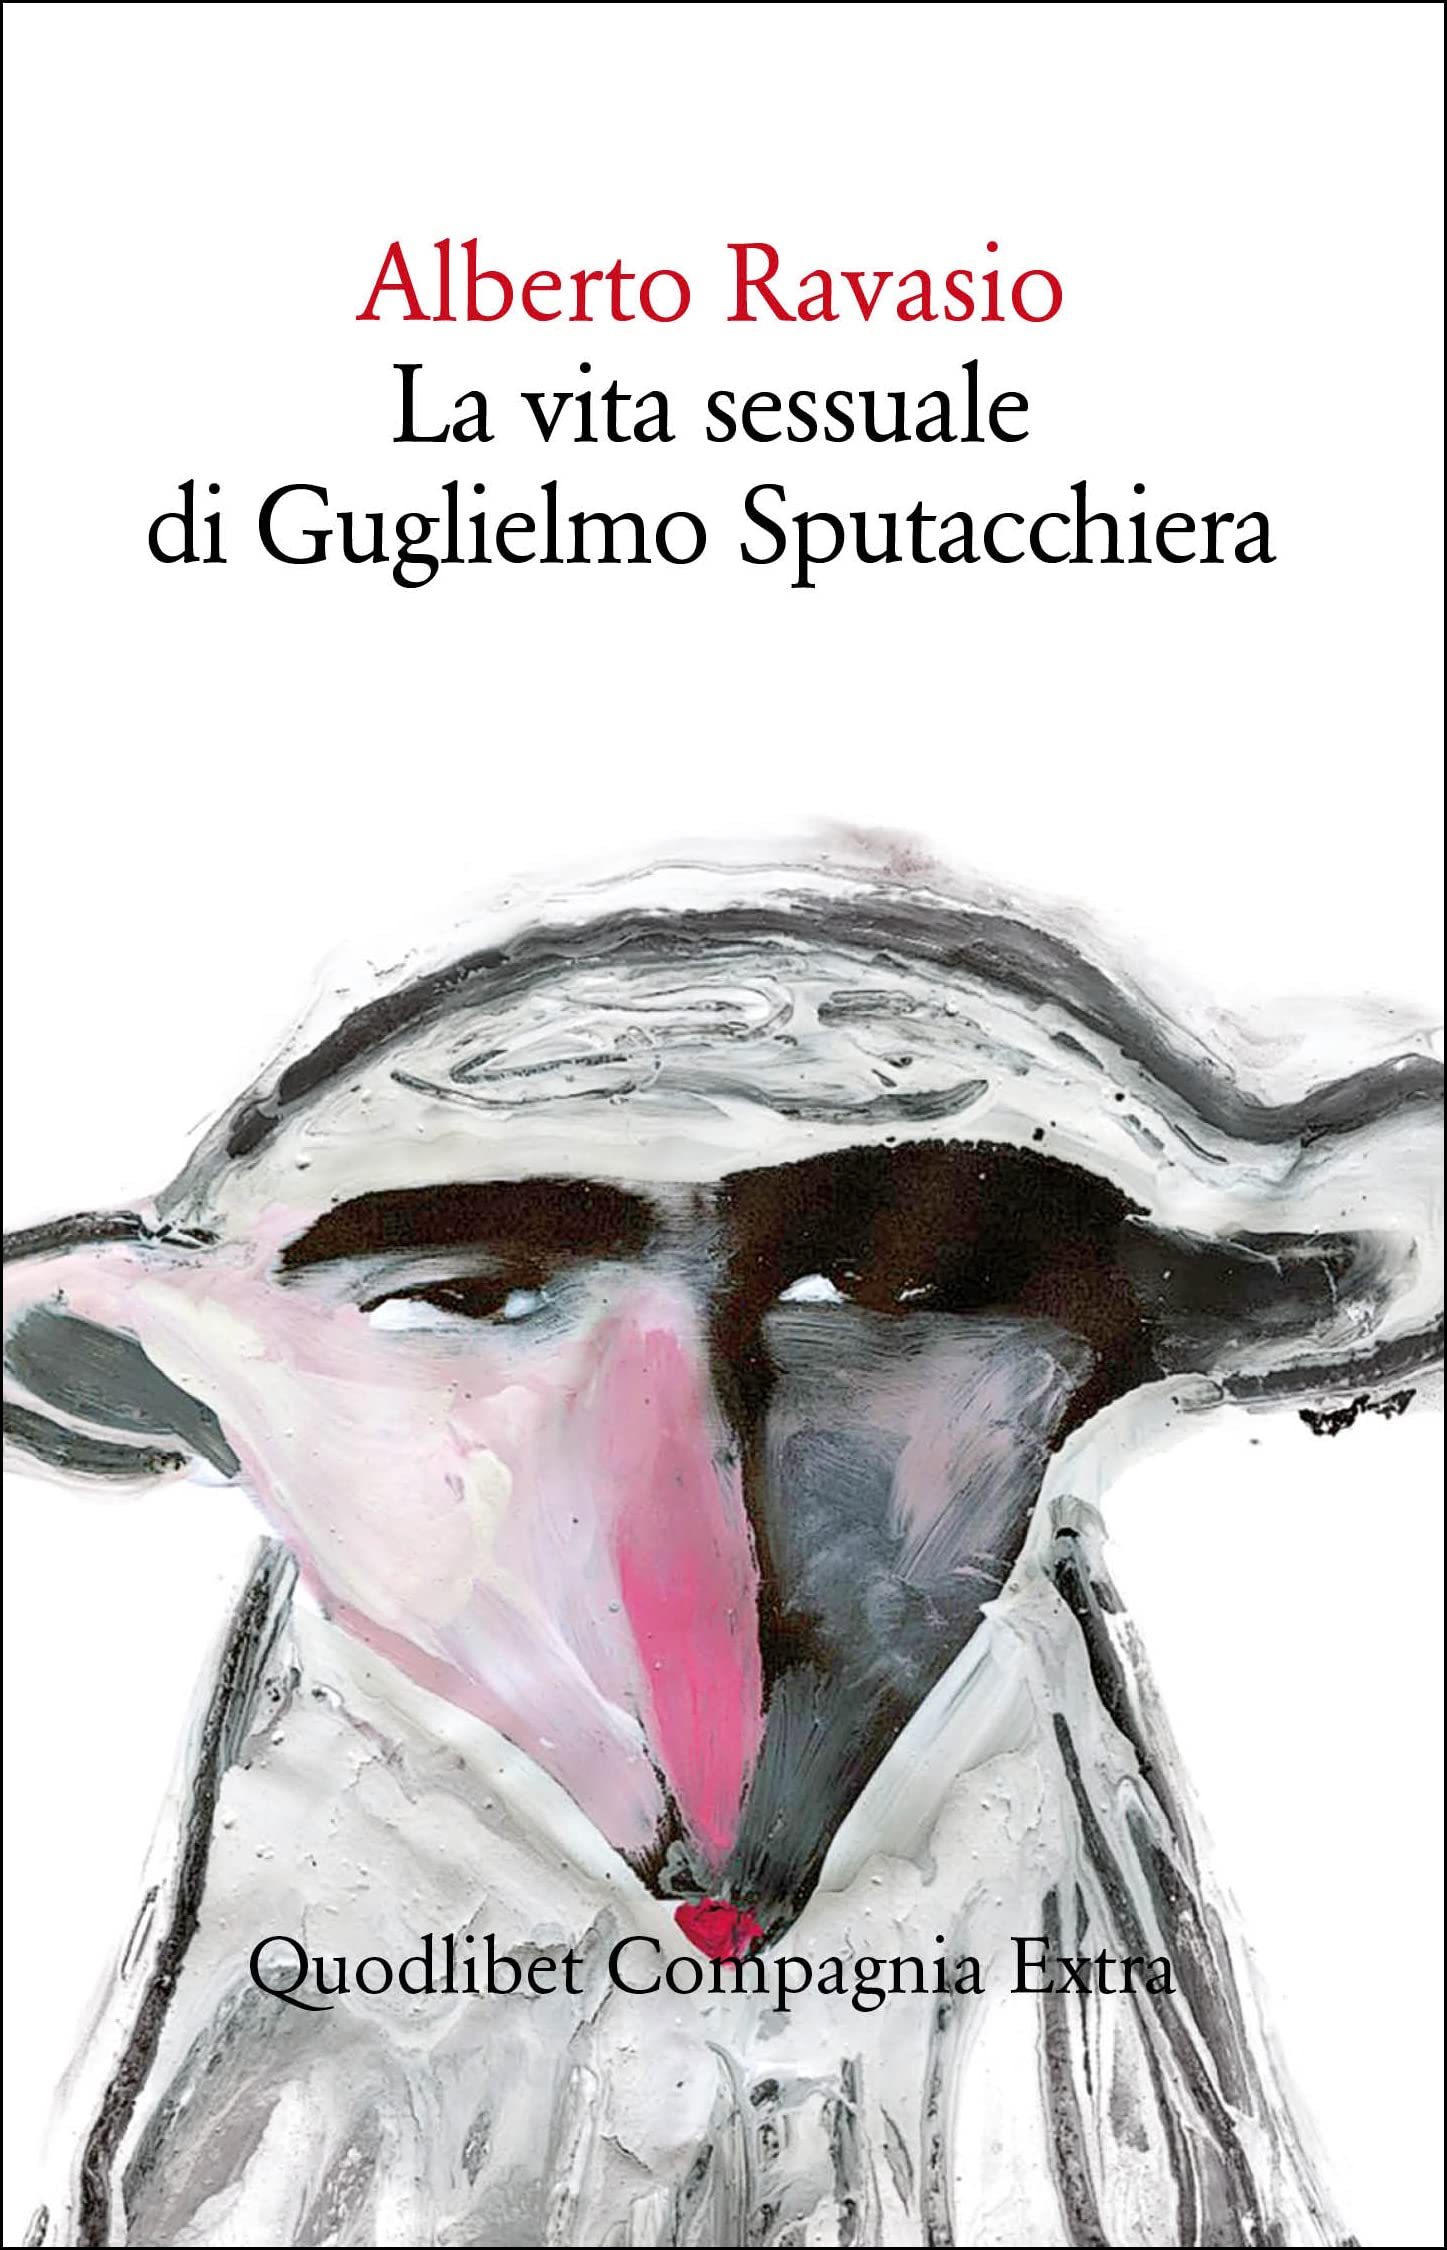 Alberto Ravasio: La vita sessuale di Guglielmo Sputacchiera (Paperback, Italiano language, 2022, Quodlibet)